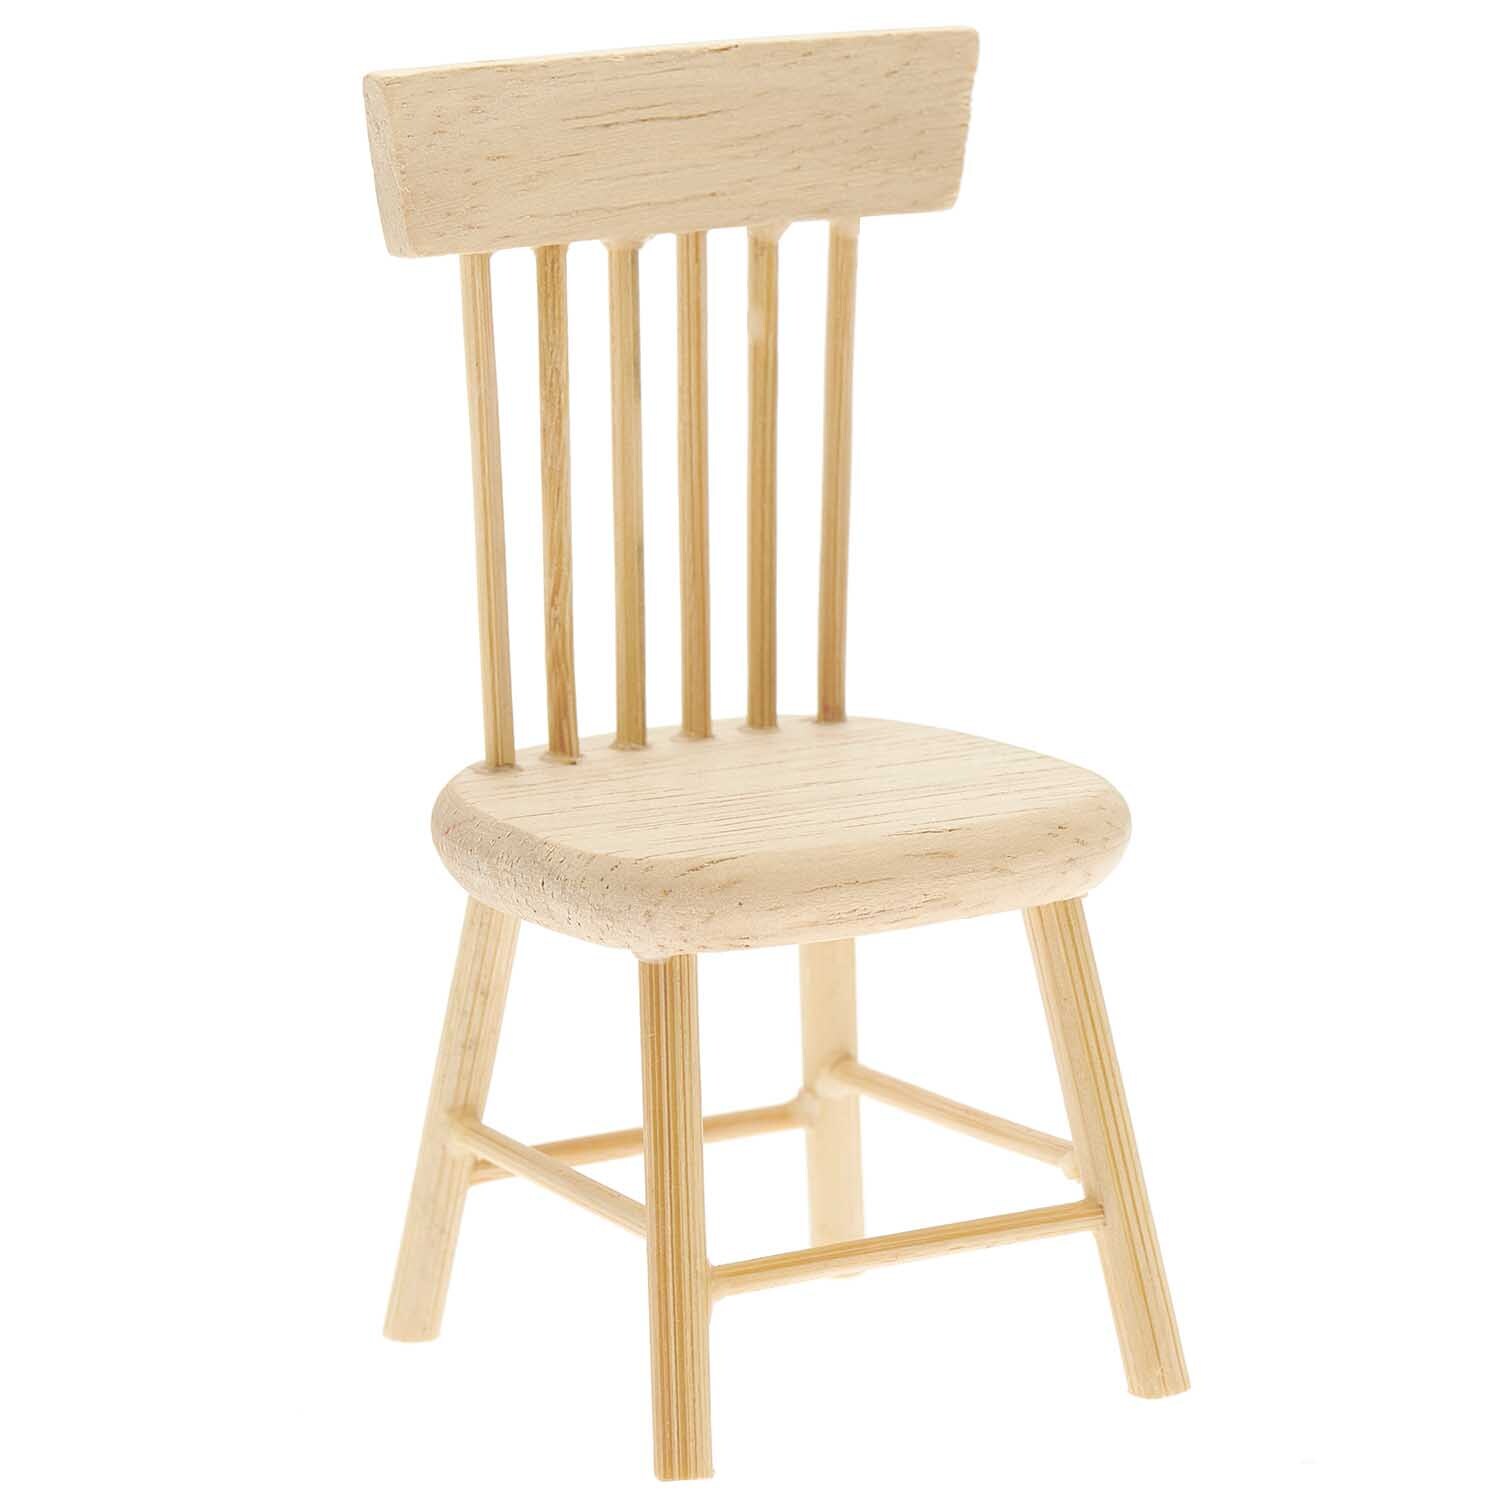 Miniatur Stuhl 4,5x4x8,5cm